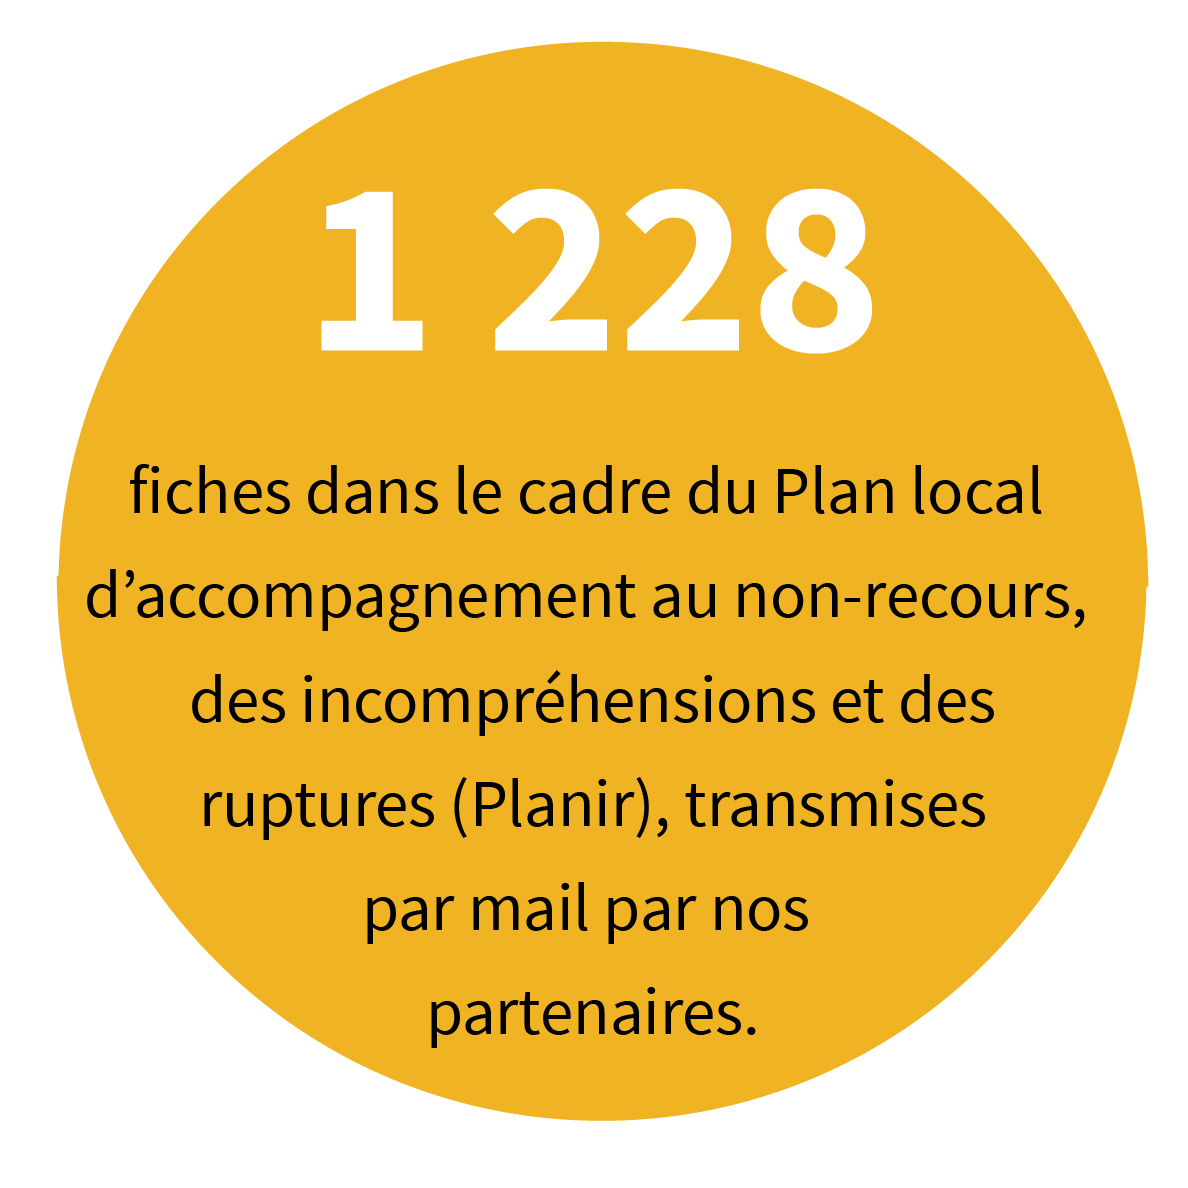 1 228 fiches dans le cadre du Plan local d’accompagnement au non-recours, des incompréhensions et des ruptures (Planir), transmises par mail par nos partenaires.